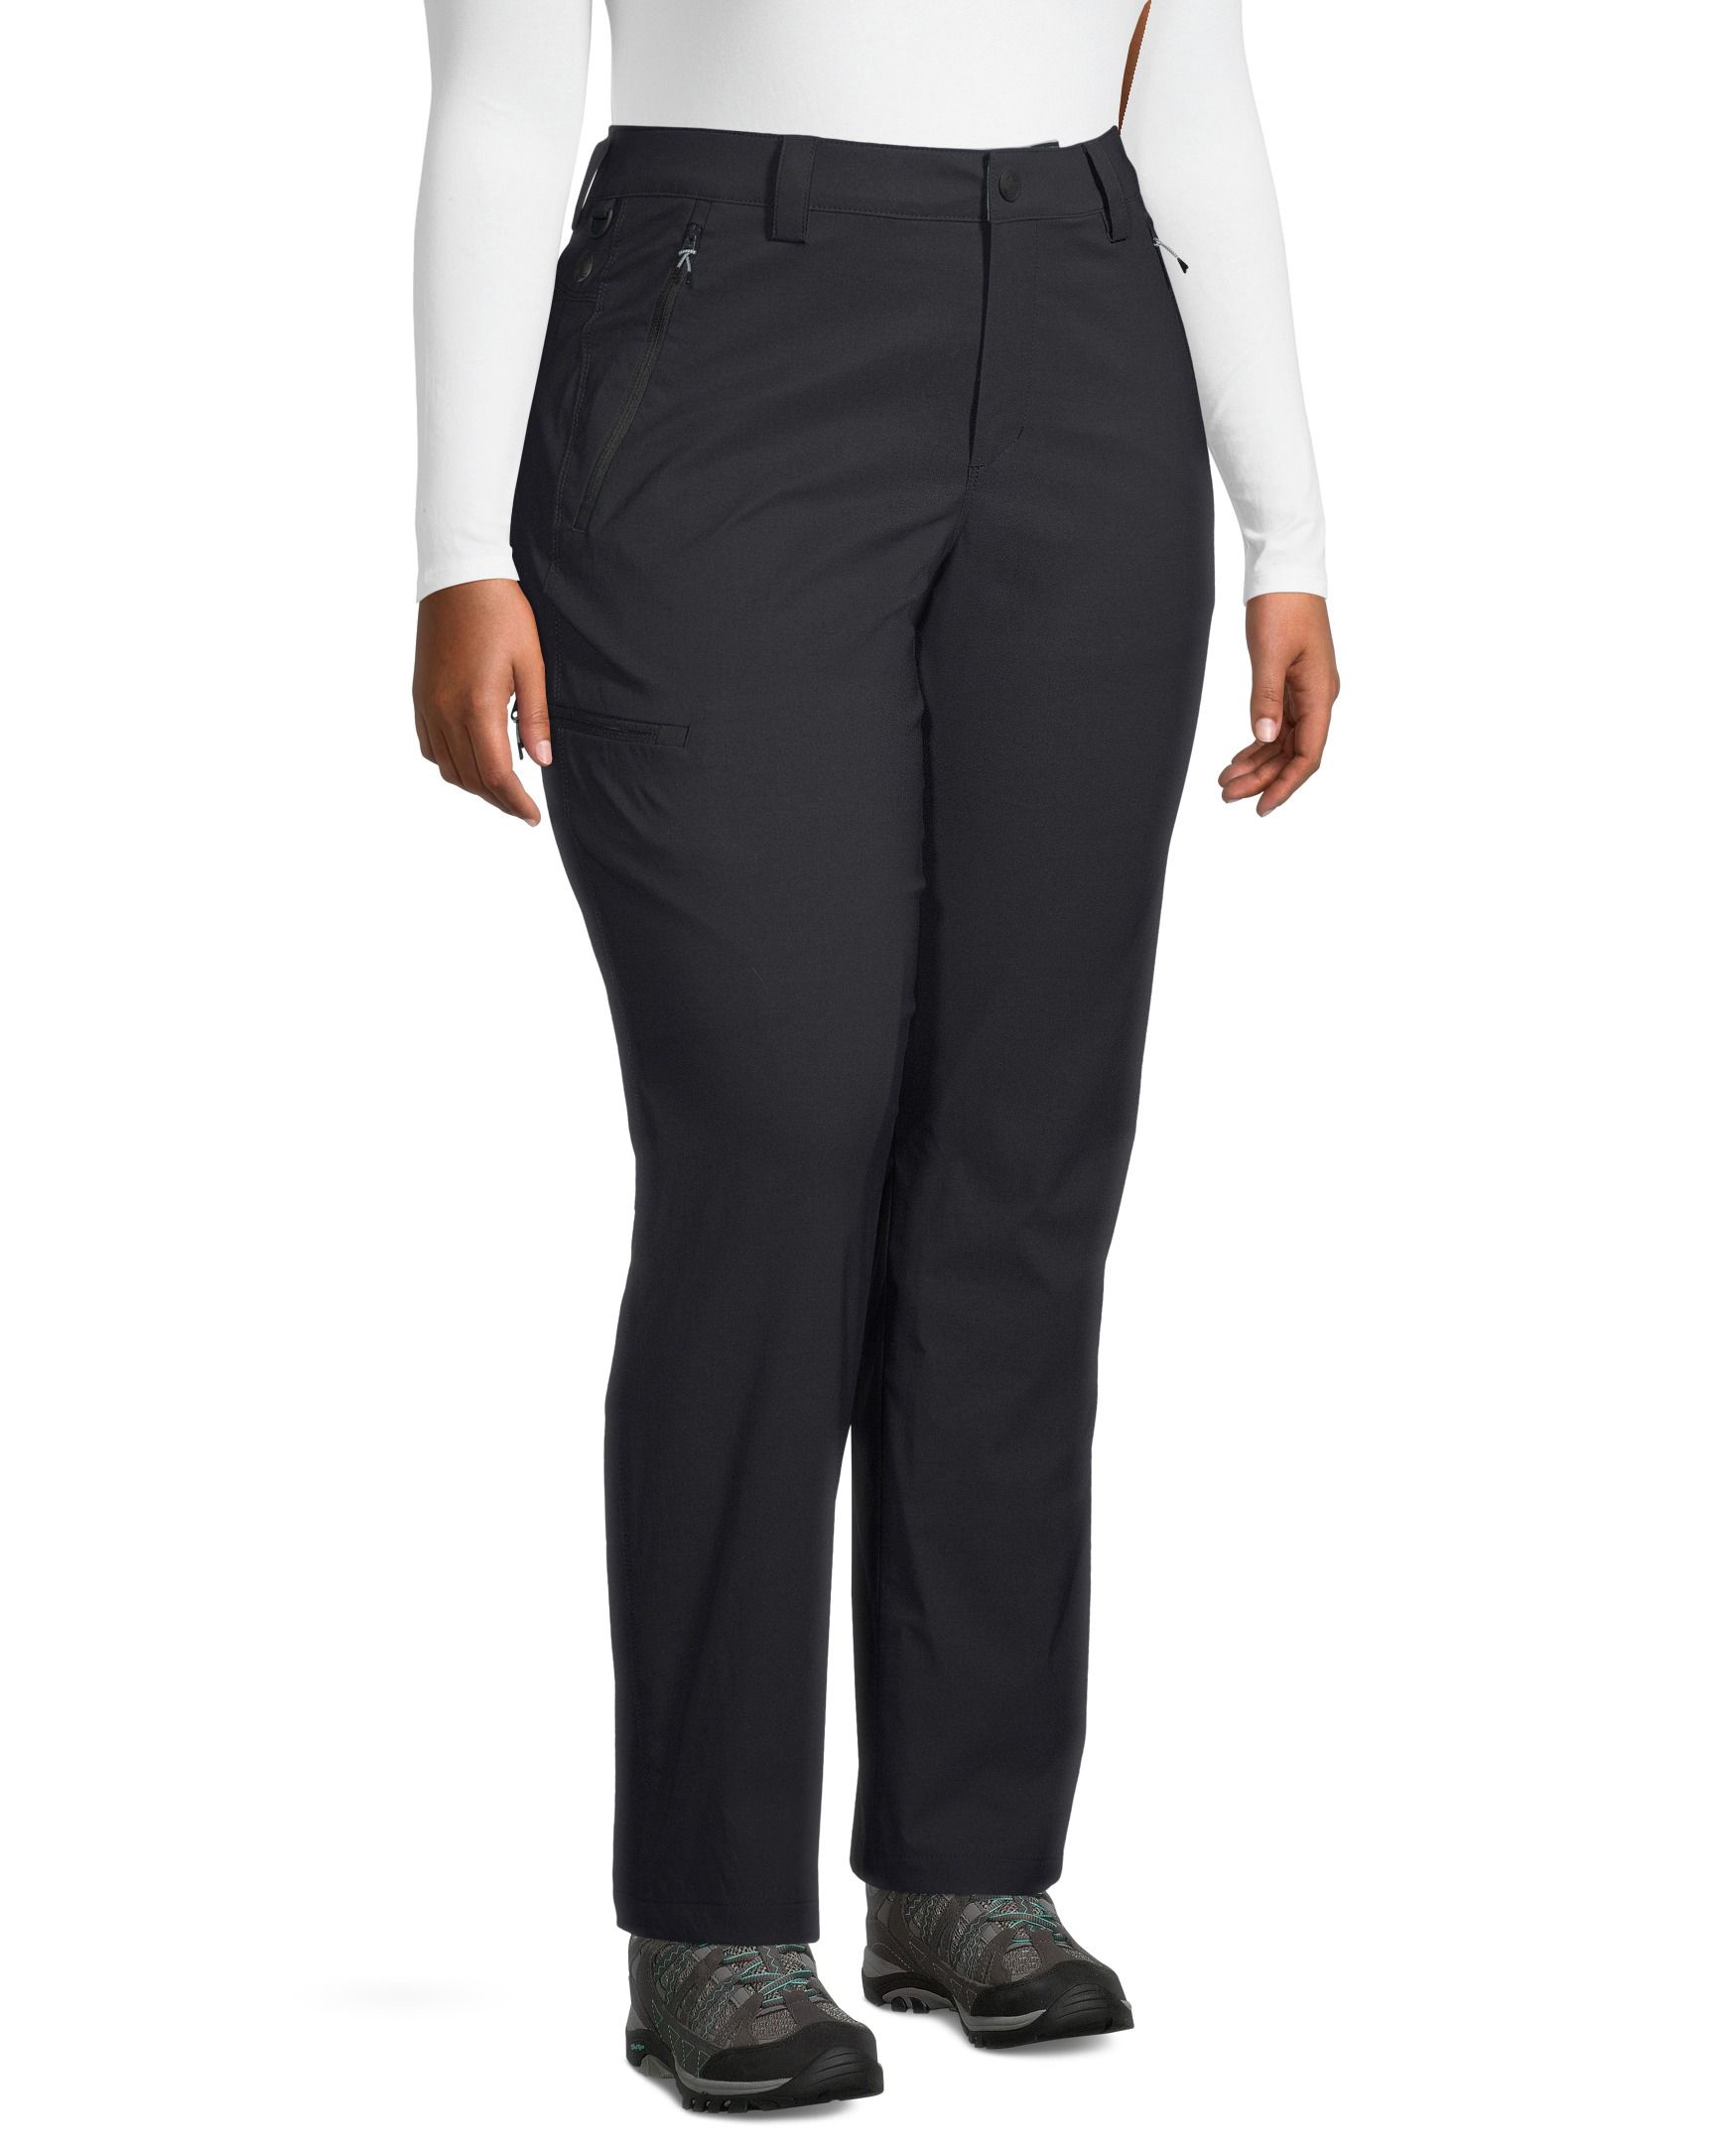 WindRiver Women's Water Repellent Hyper-Dri 1 T-Max Heat Fleece Lined Pants